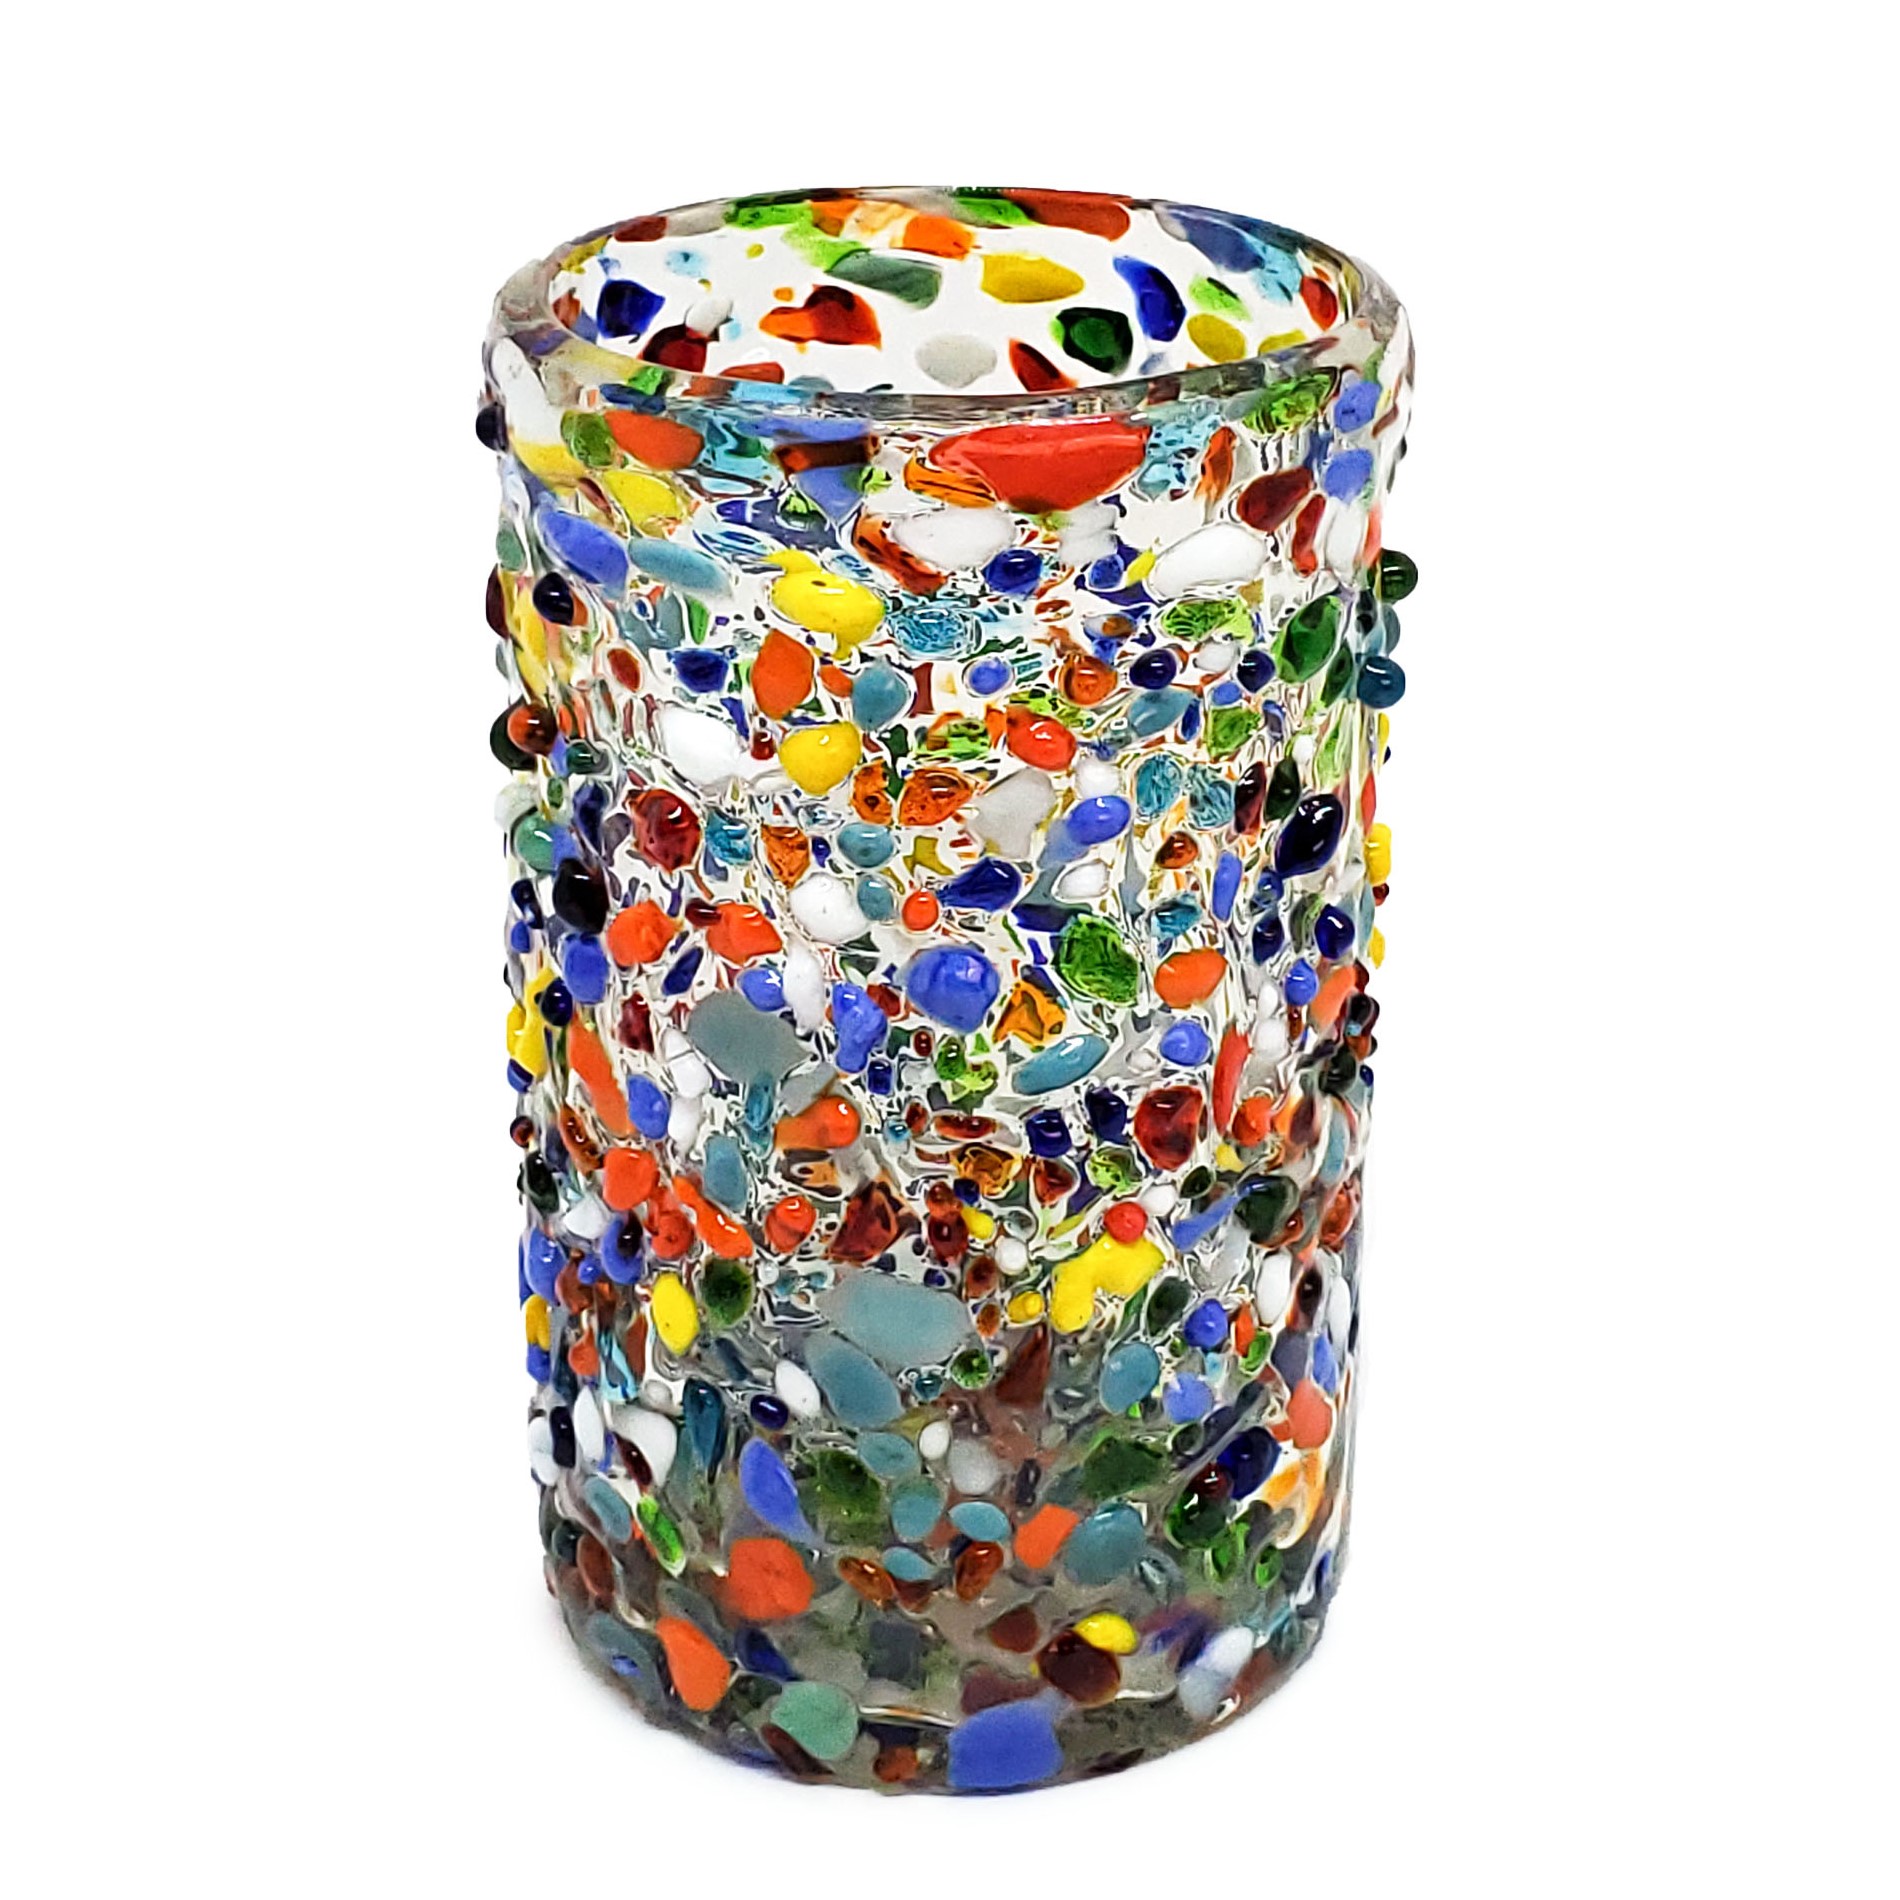 Juego de 6 vasos grandes 'Confeti granizado', 14 oz, Vidrio Reciclado, Libre de Plomo y Toxinas